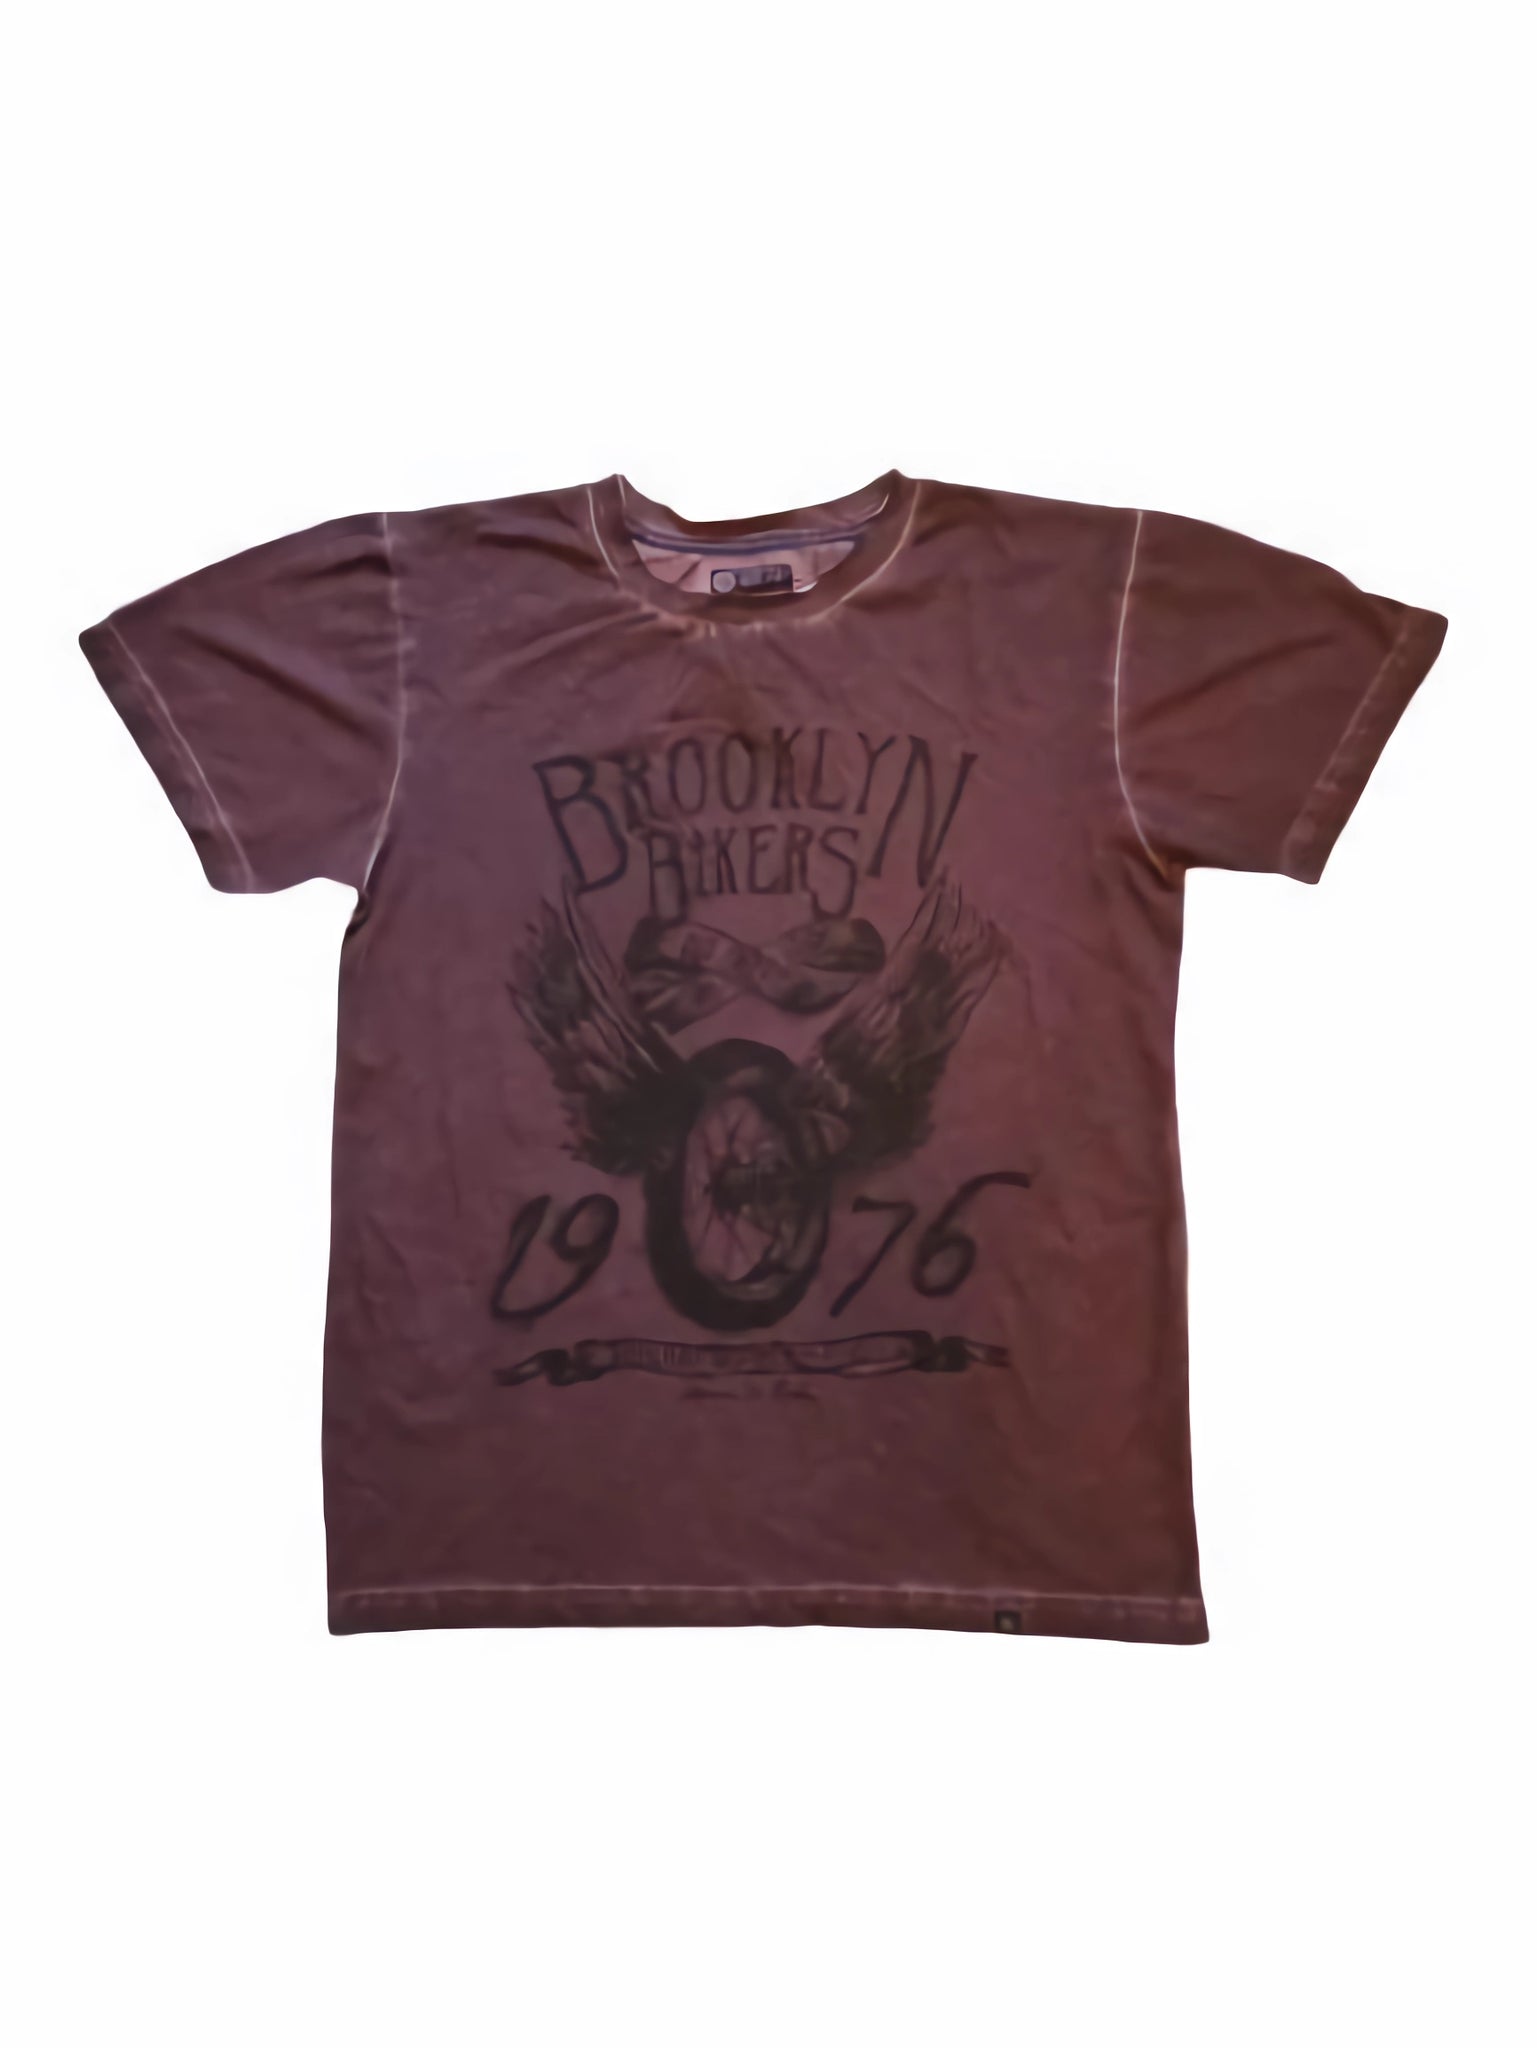 Joe Browns Dynamic Tees Brooklyn Bikers Purple Tie Dye Mens T-Shirt